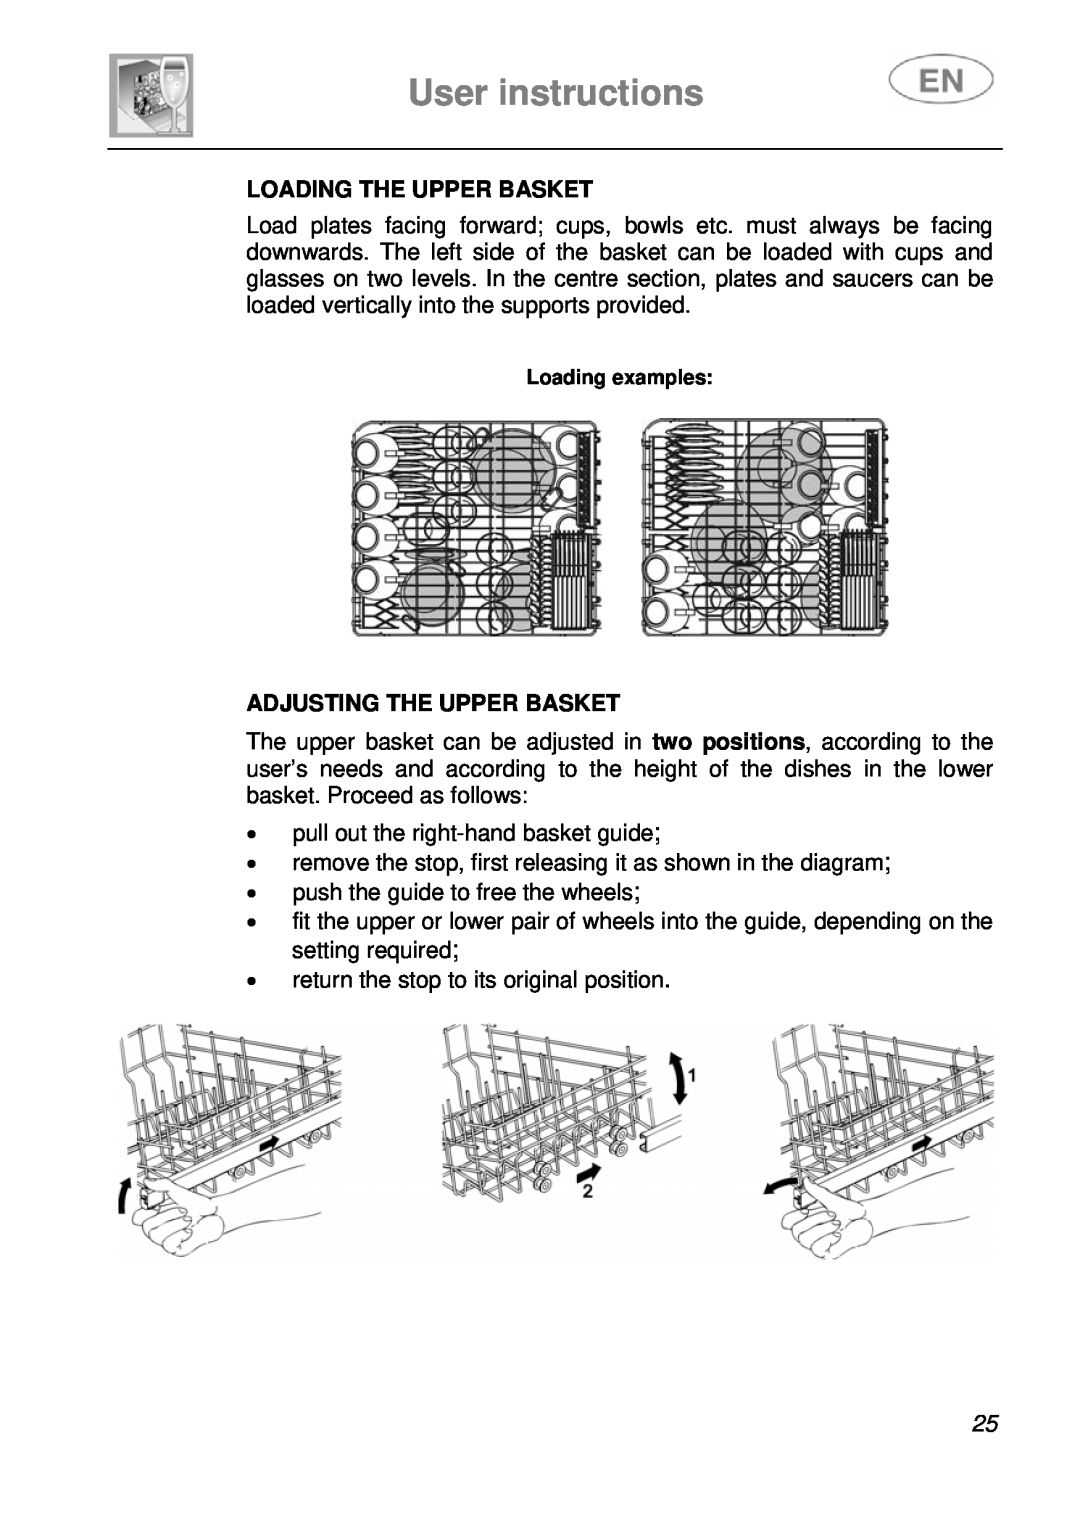 Smeg KLS55B instruction manual Loading The Upper Basket, Adjusting The Upper Basket, User instructions 